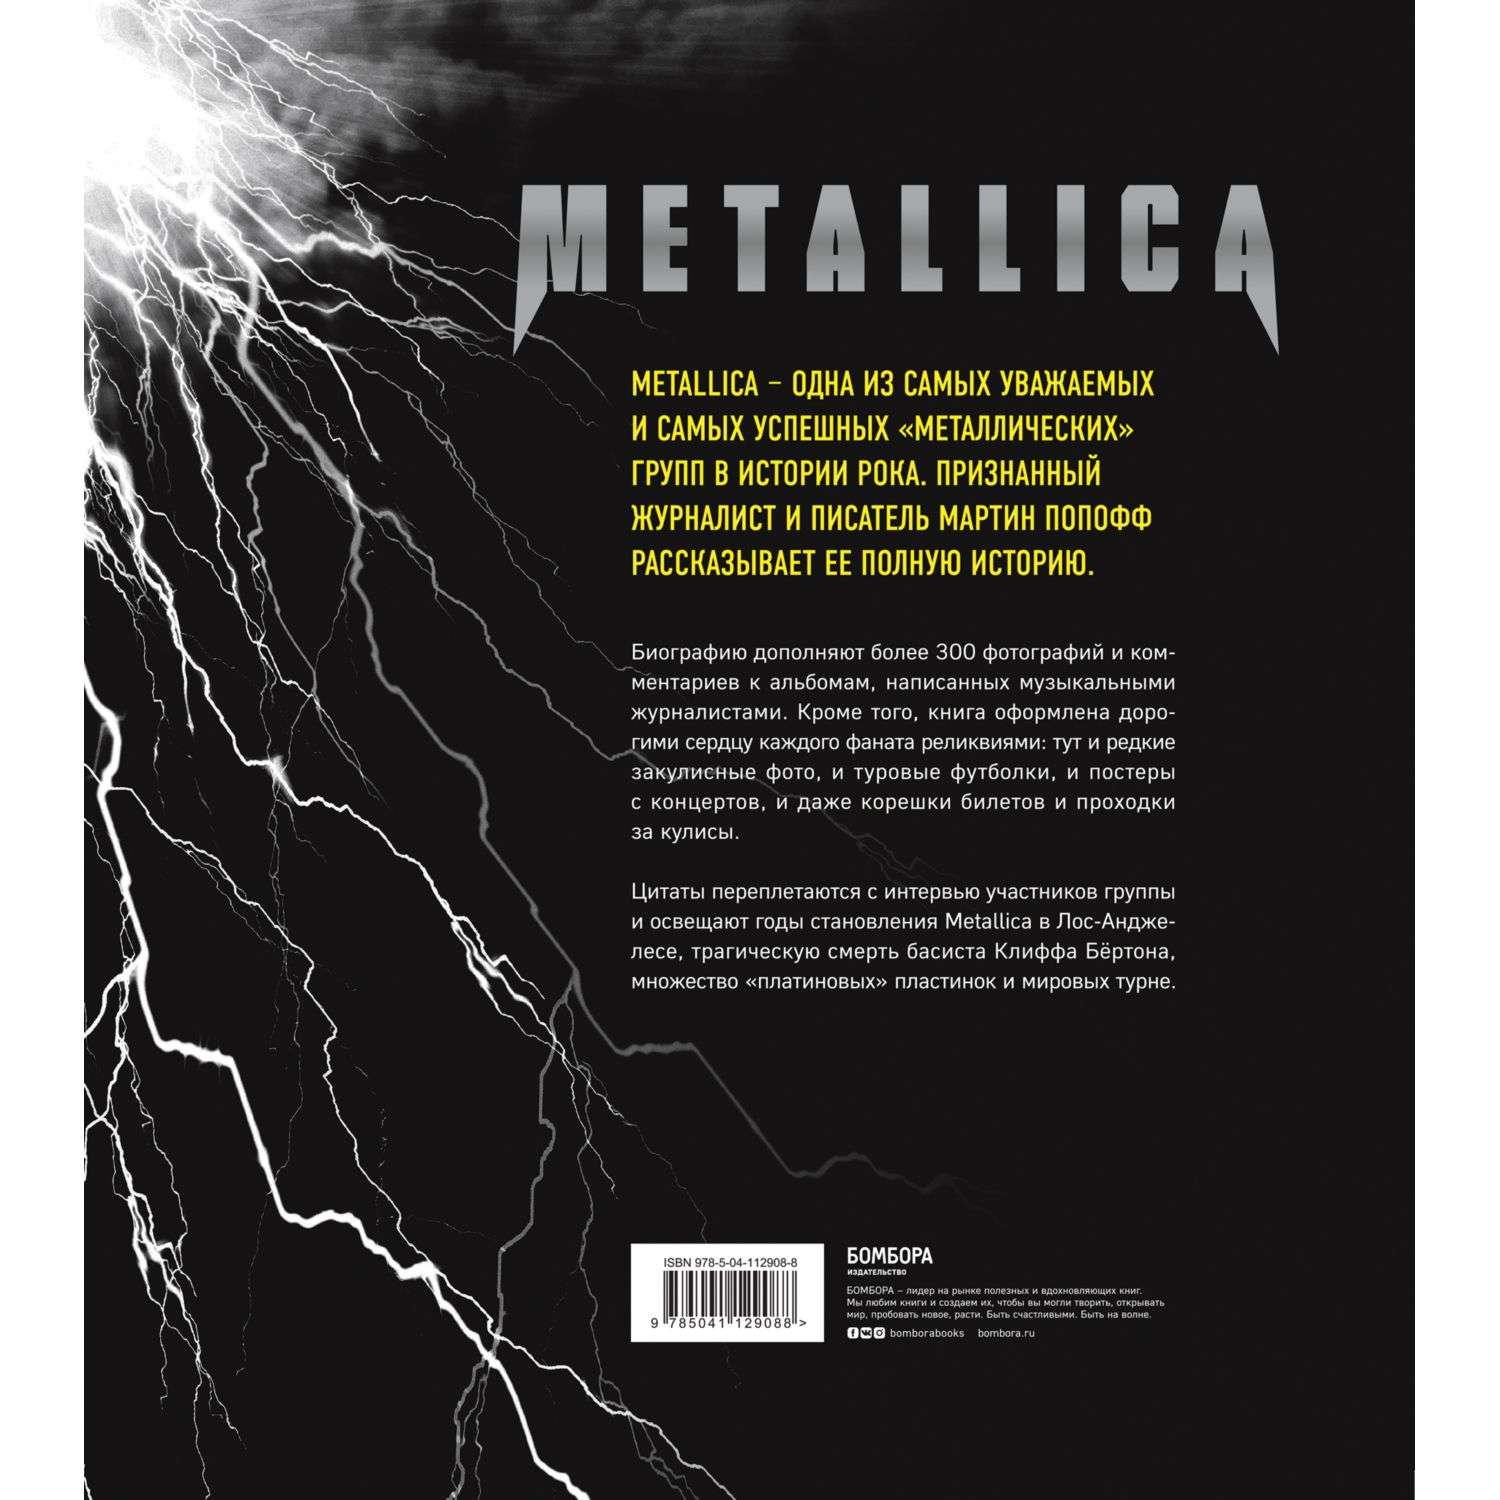 Книга БОМБОРА Metallica Иллюстрированная история легенд метал сцены - фото 2